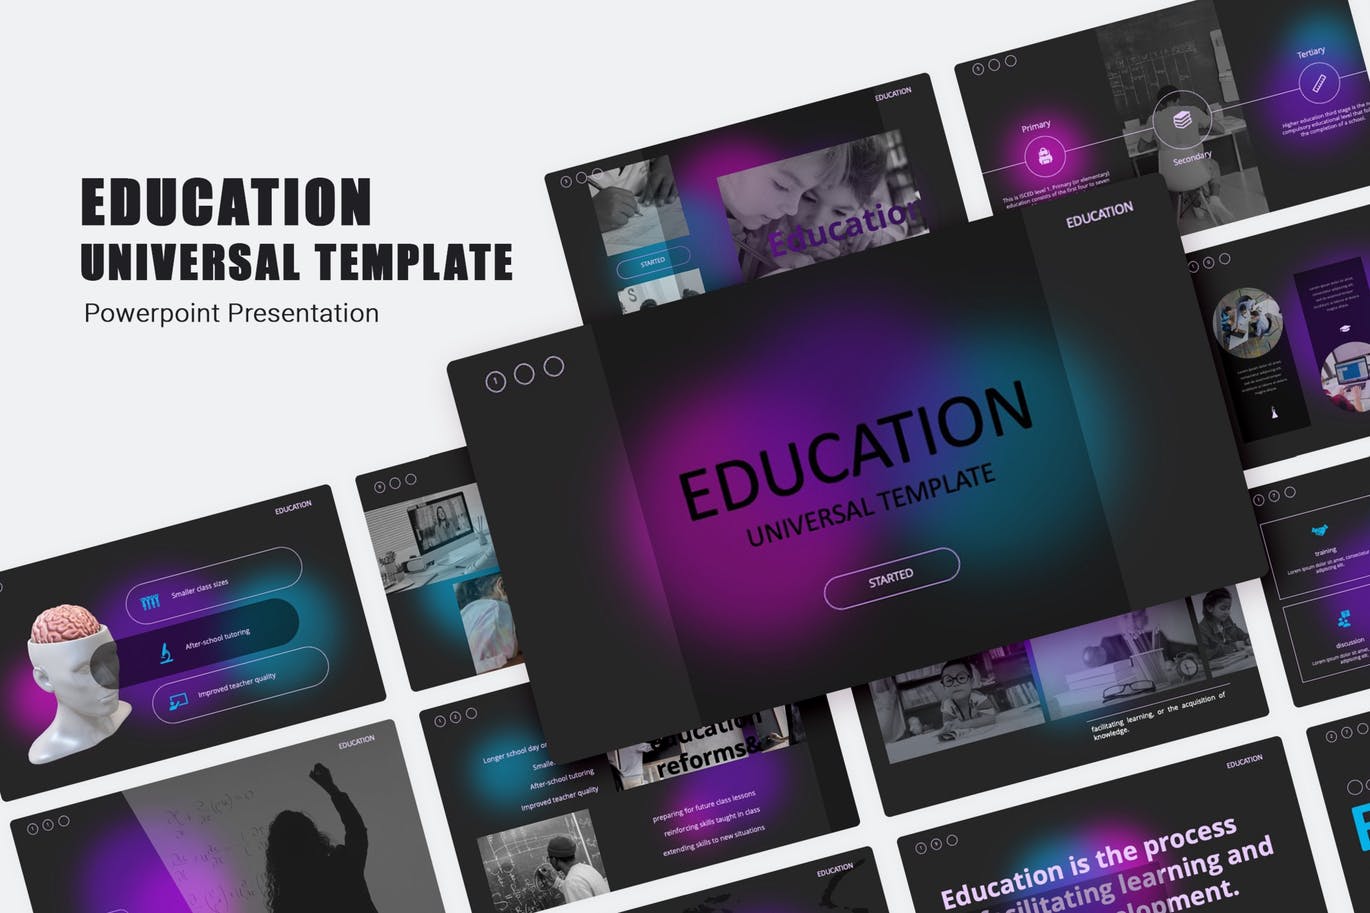 教育多用途演示文稿PPT模板 Education PowerPoint Template 幻灯图表 第1张